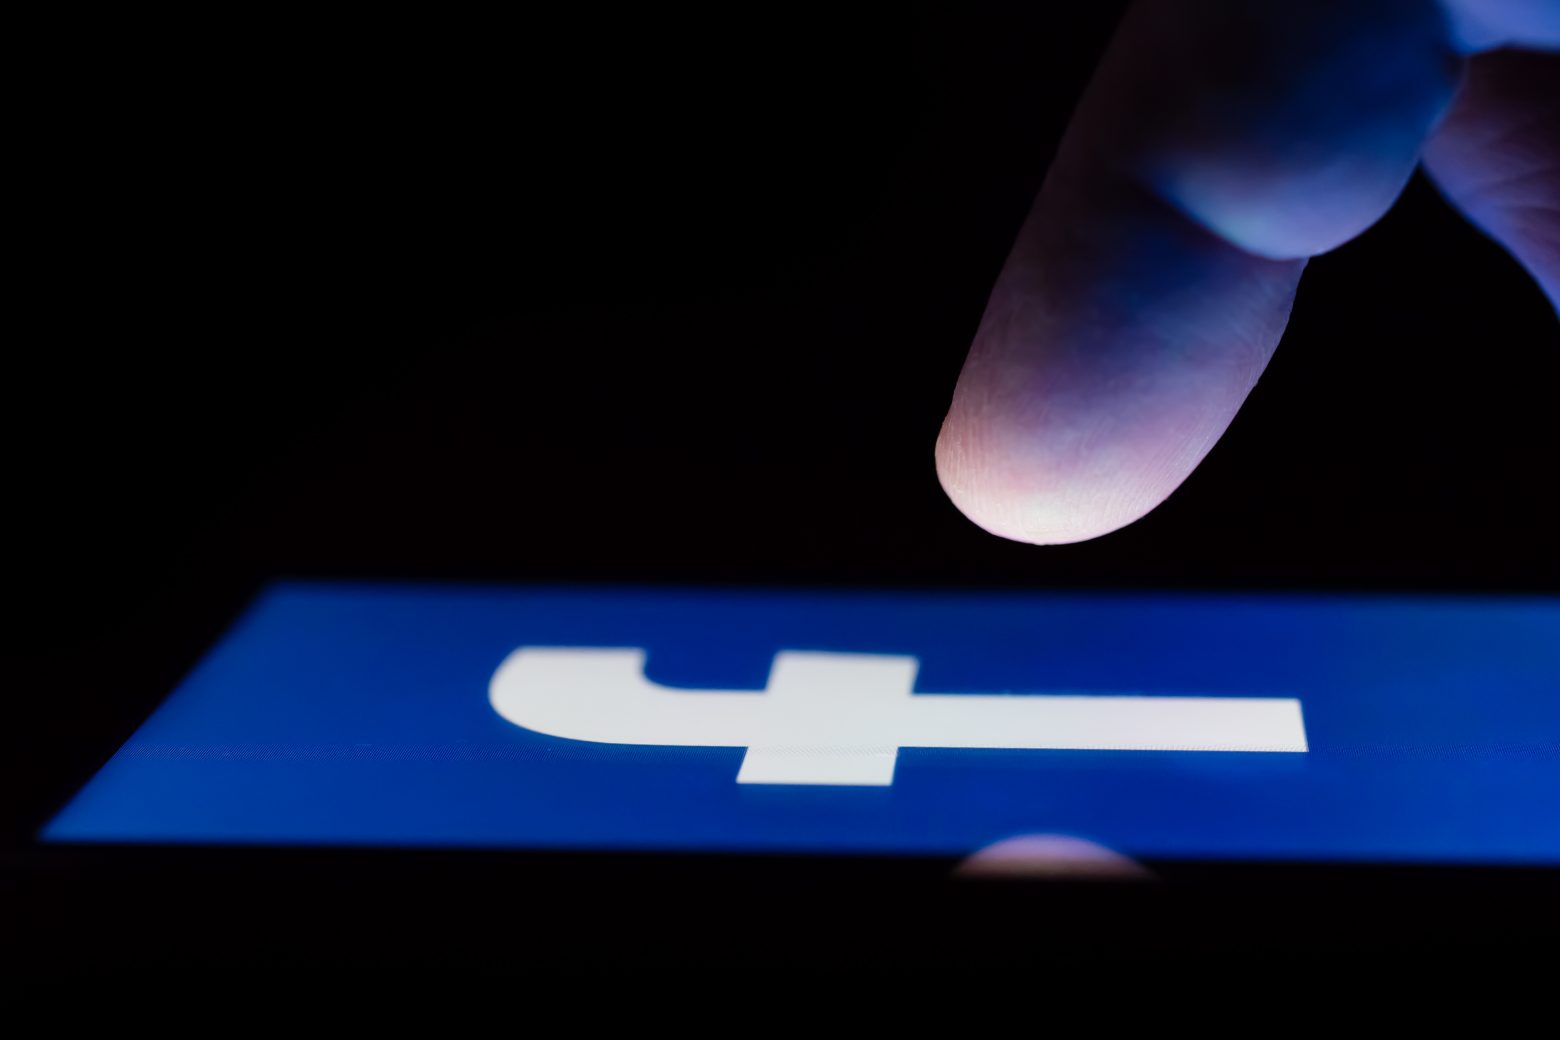 Δημοσίευμα «βόμβα» - Αναφορές ότι πωλούνται δεδομένα δισεκατομμυρίων χρηστών του Facebook σε χάκερ